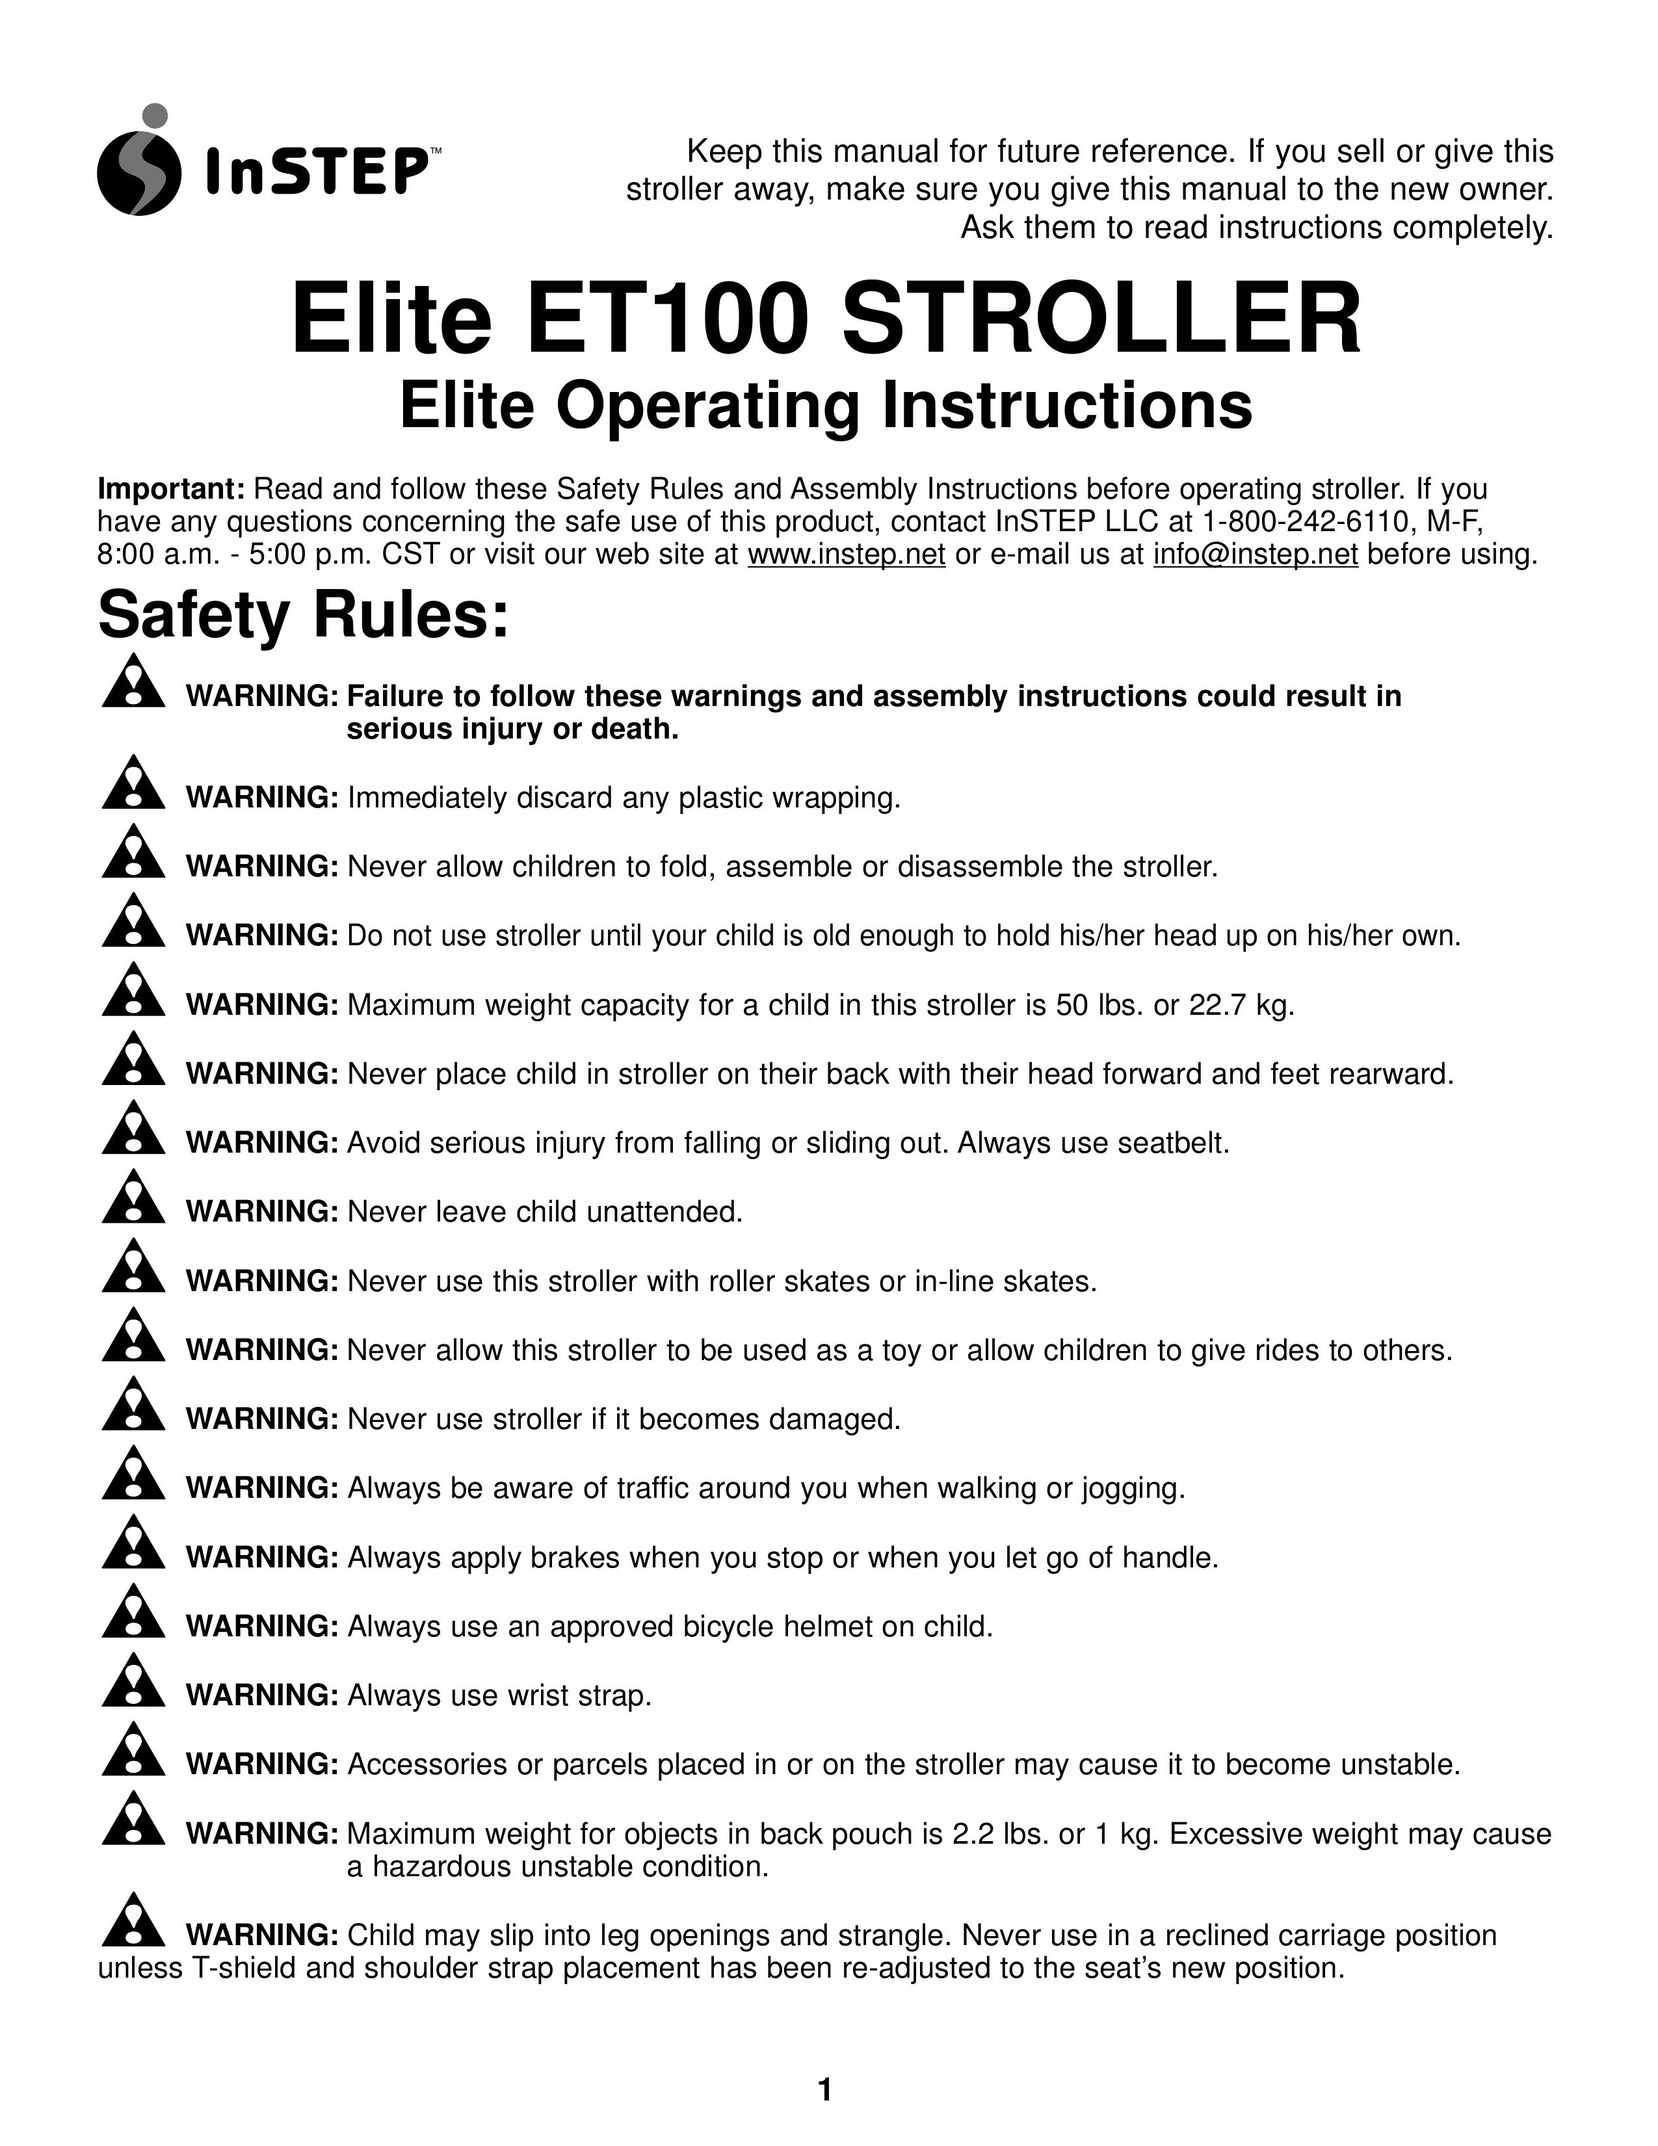 InStep ET100 Stroller User Manual